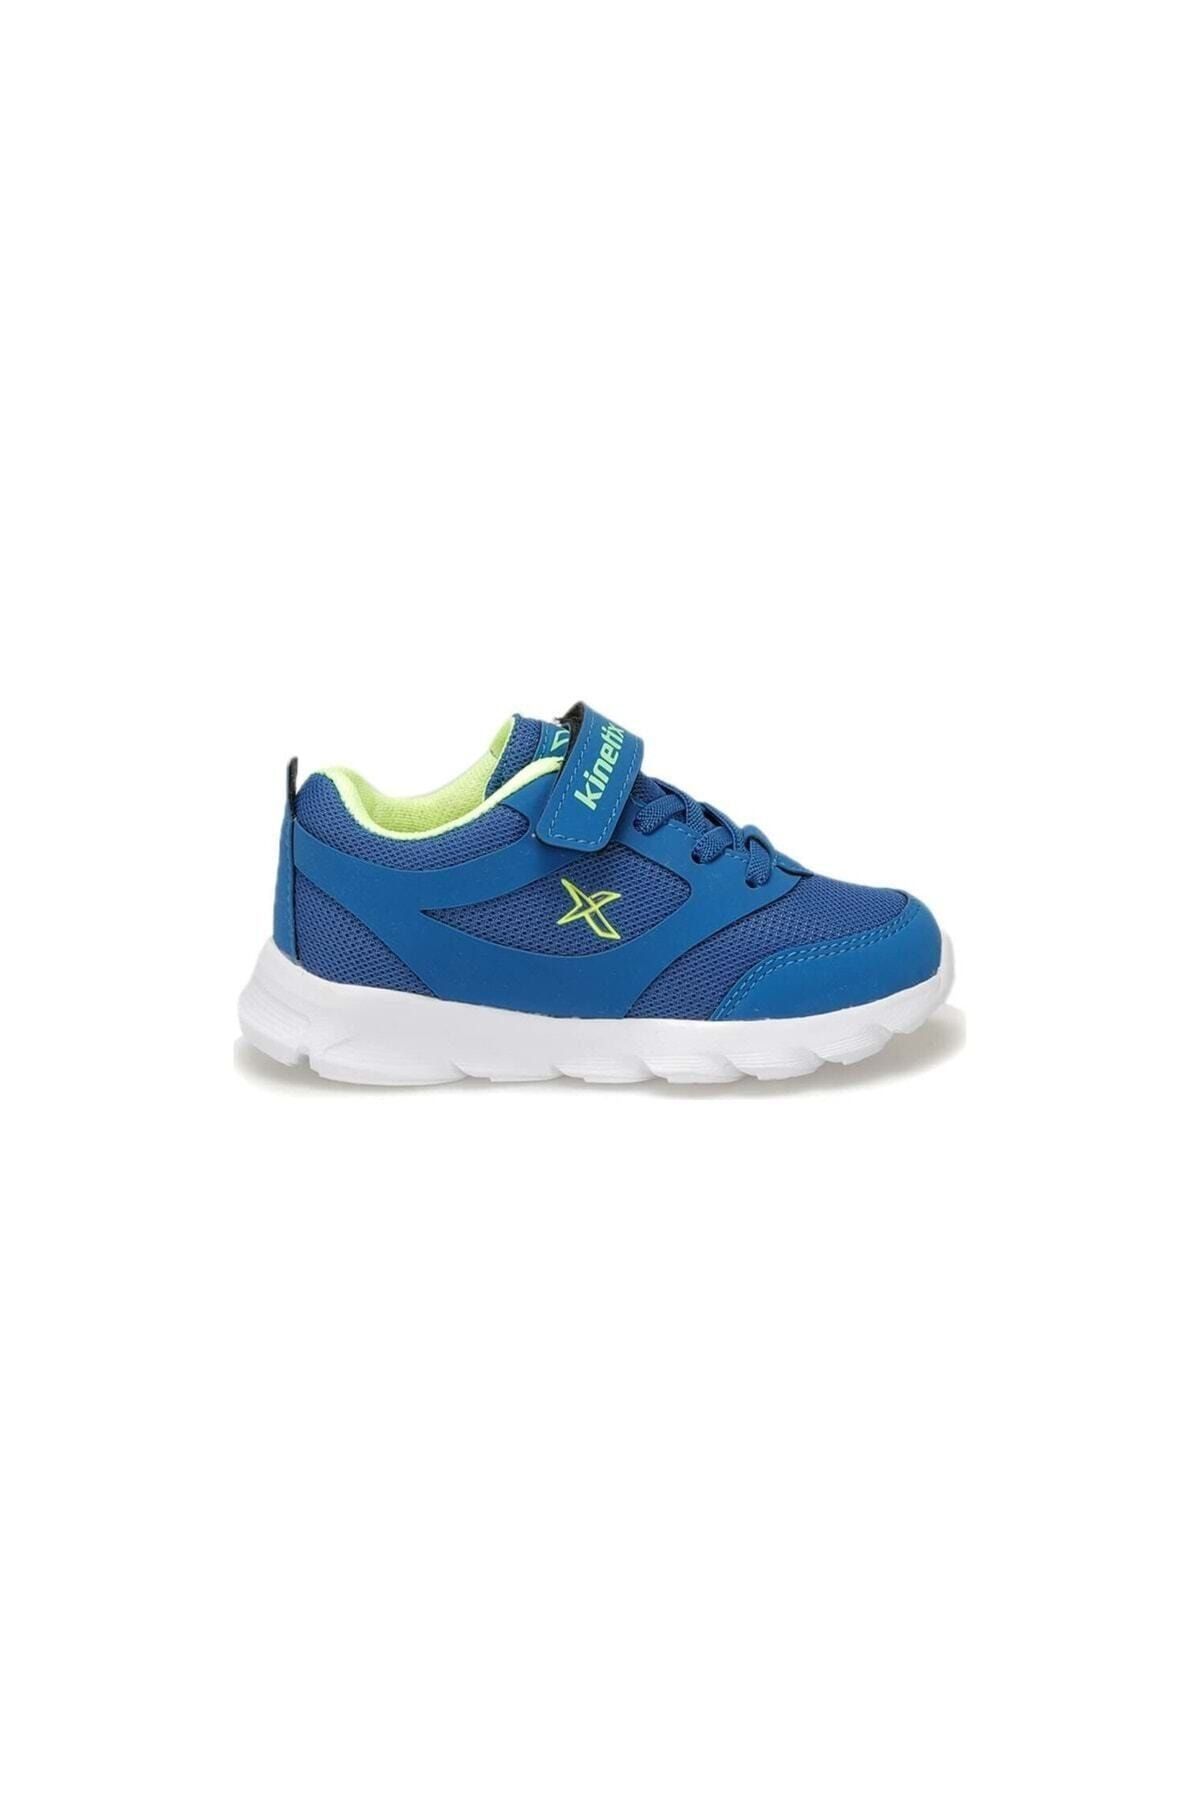 Kinetix Saks Mavi Neon Yeşil Çocuk Spor Ayakkabı Almera J